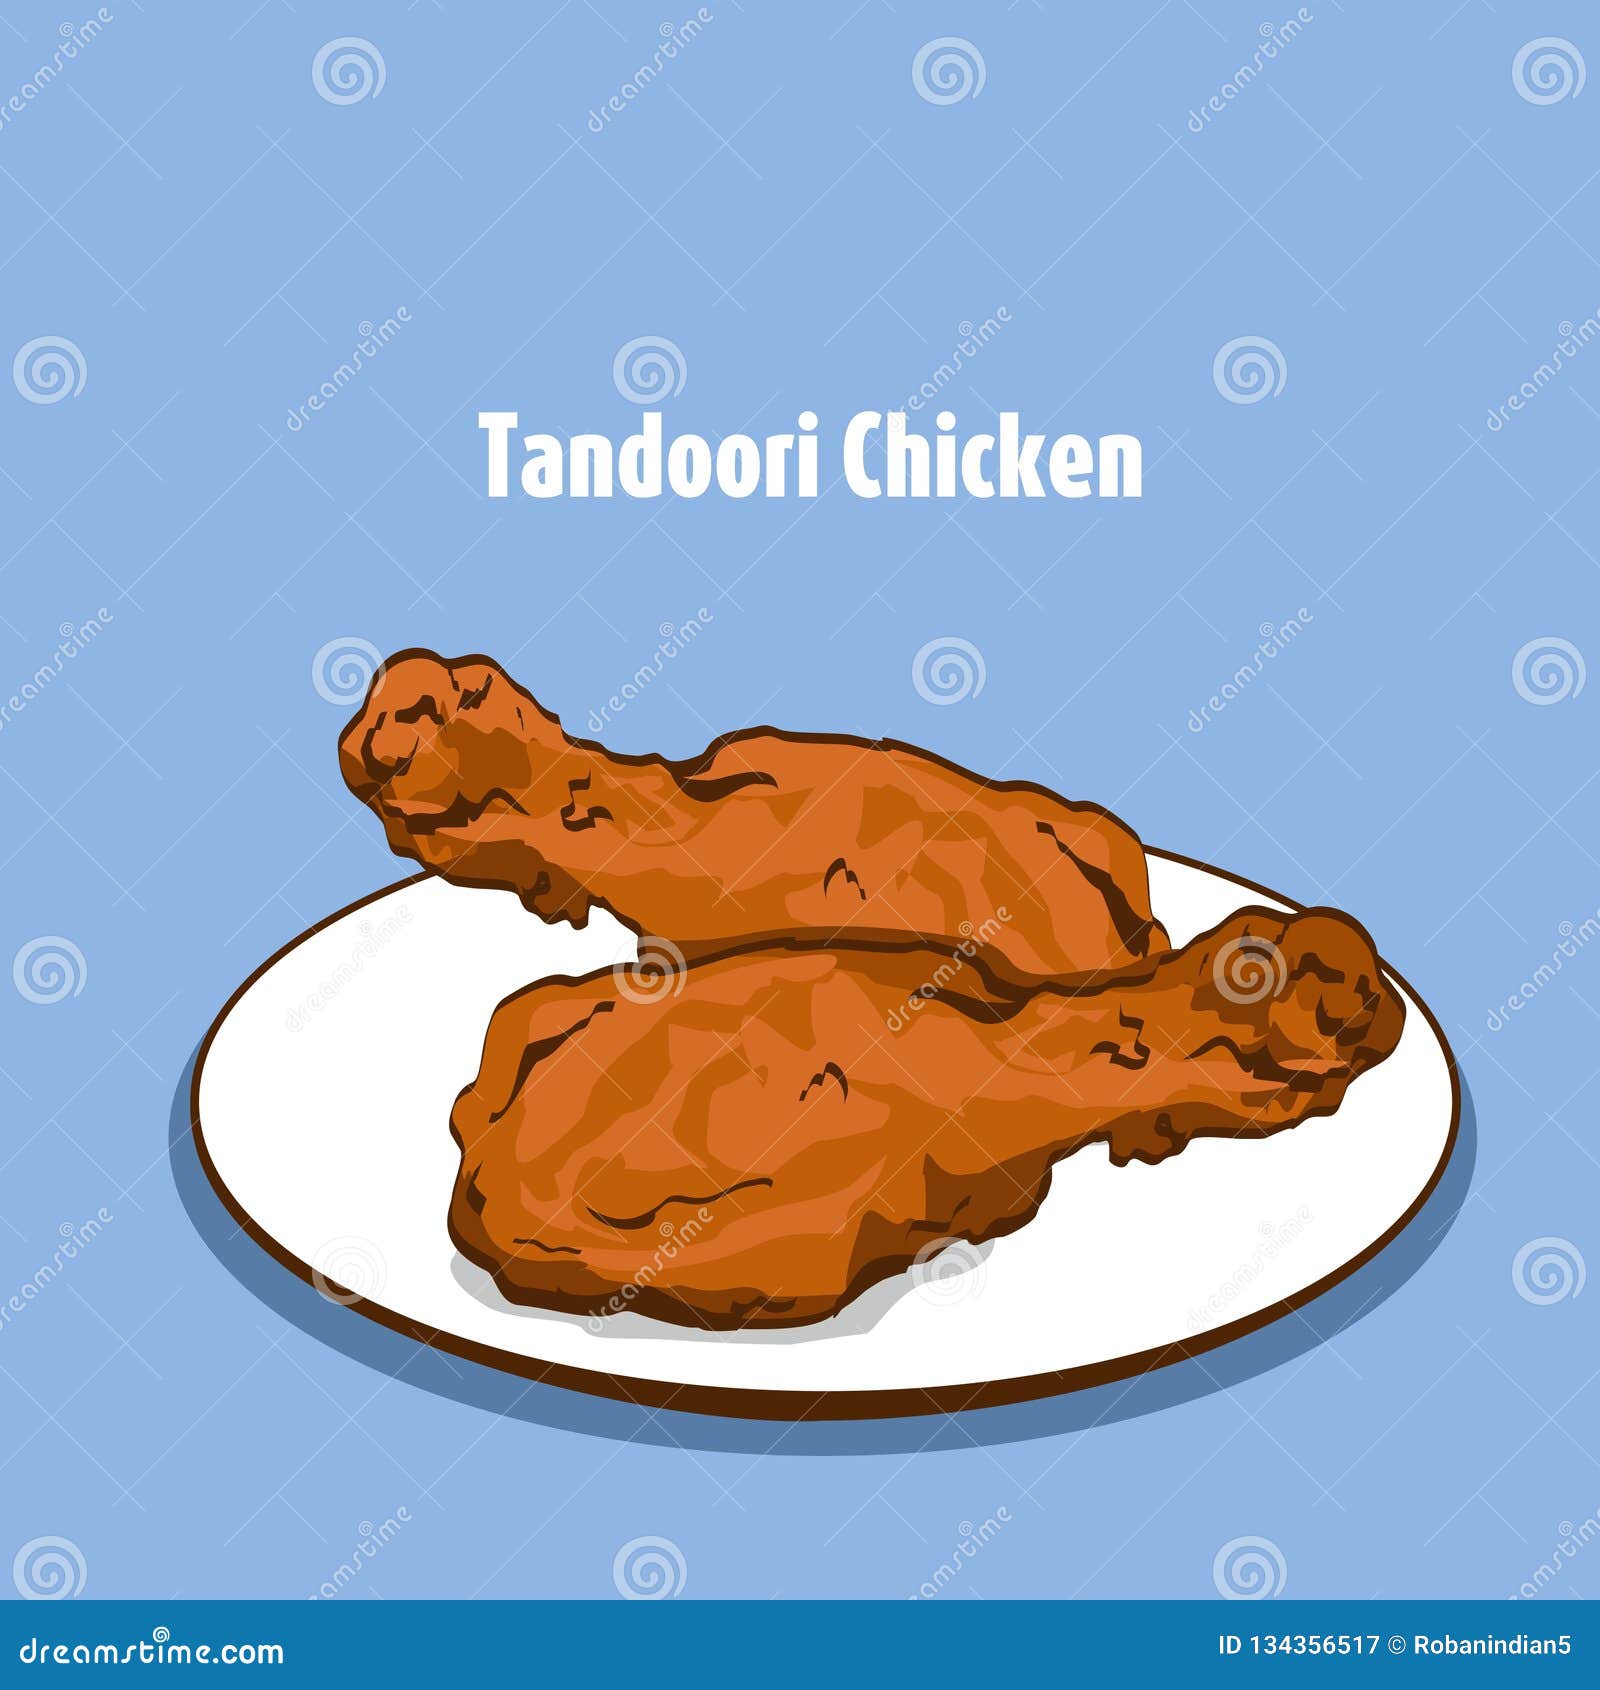 Tandoori Chicken Vector Illustration or Clip Art Stock Vector -  Illustration of chicken, tandoori: 134356517